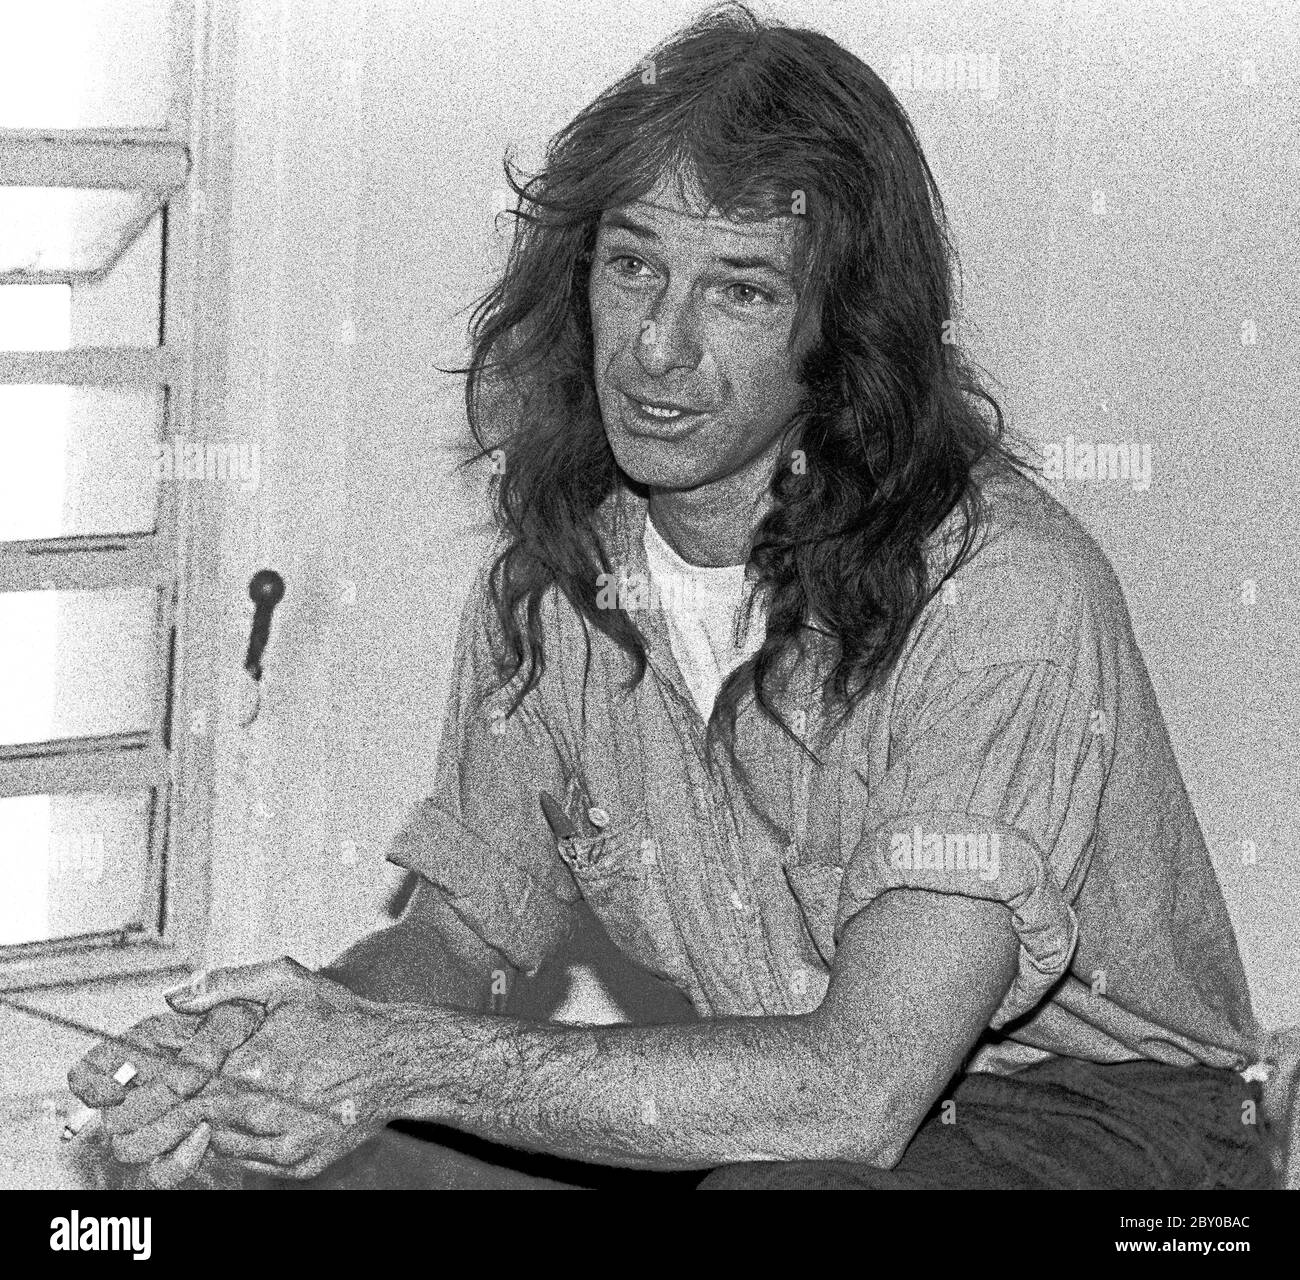 Dennis Robert Peron, ein Aktivist aus San Francisco, war Ende der 70er Jahre im Gefängnis Stockfoto